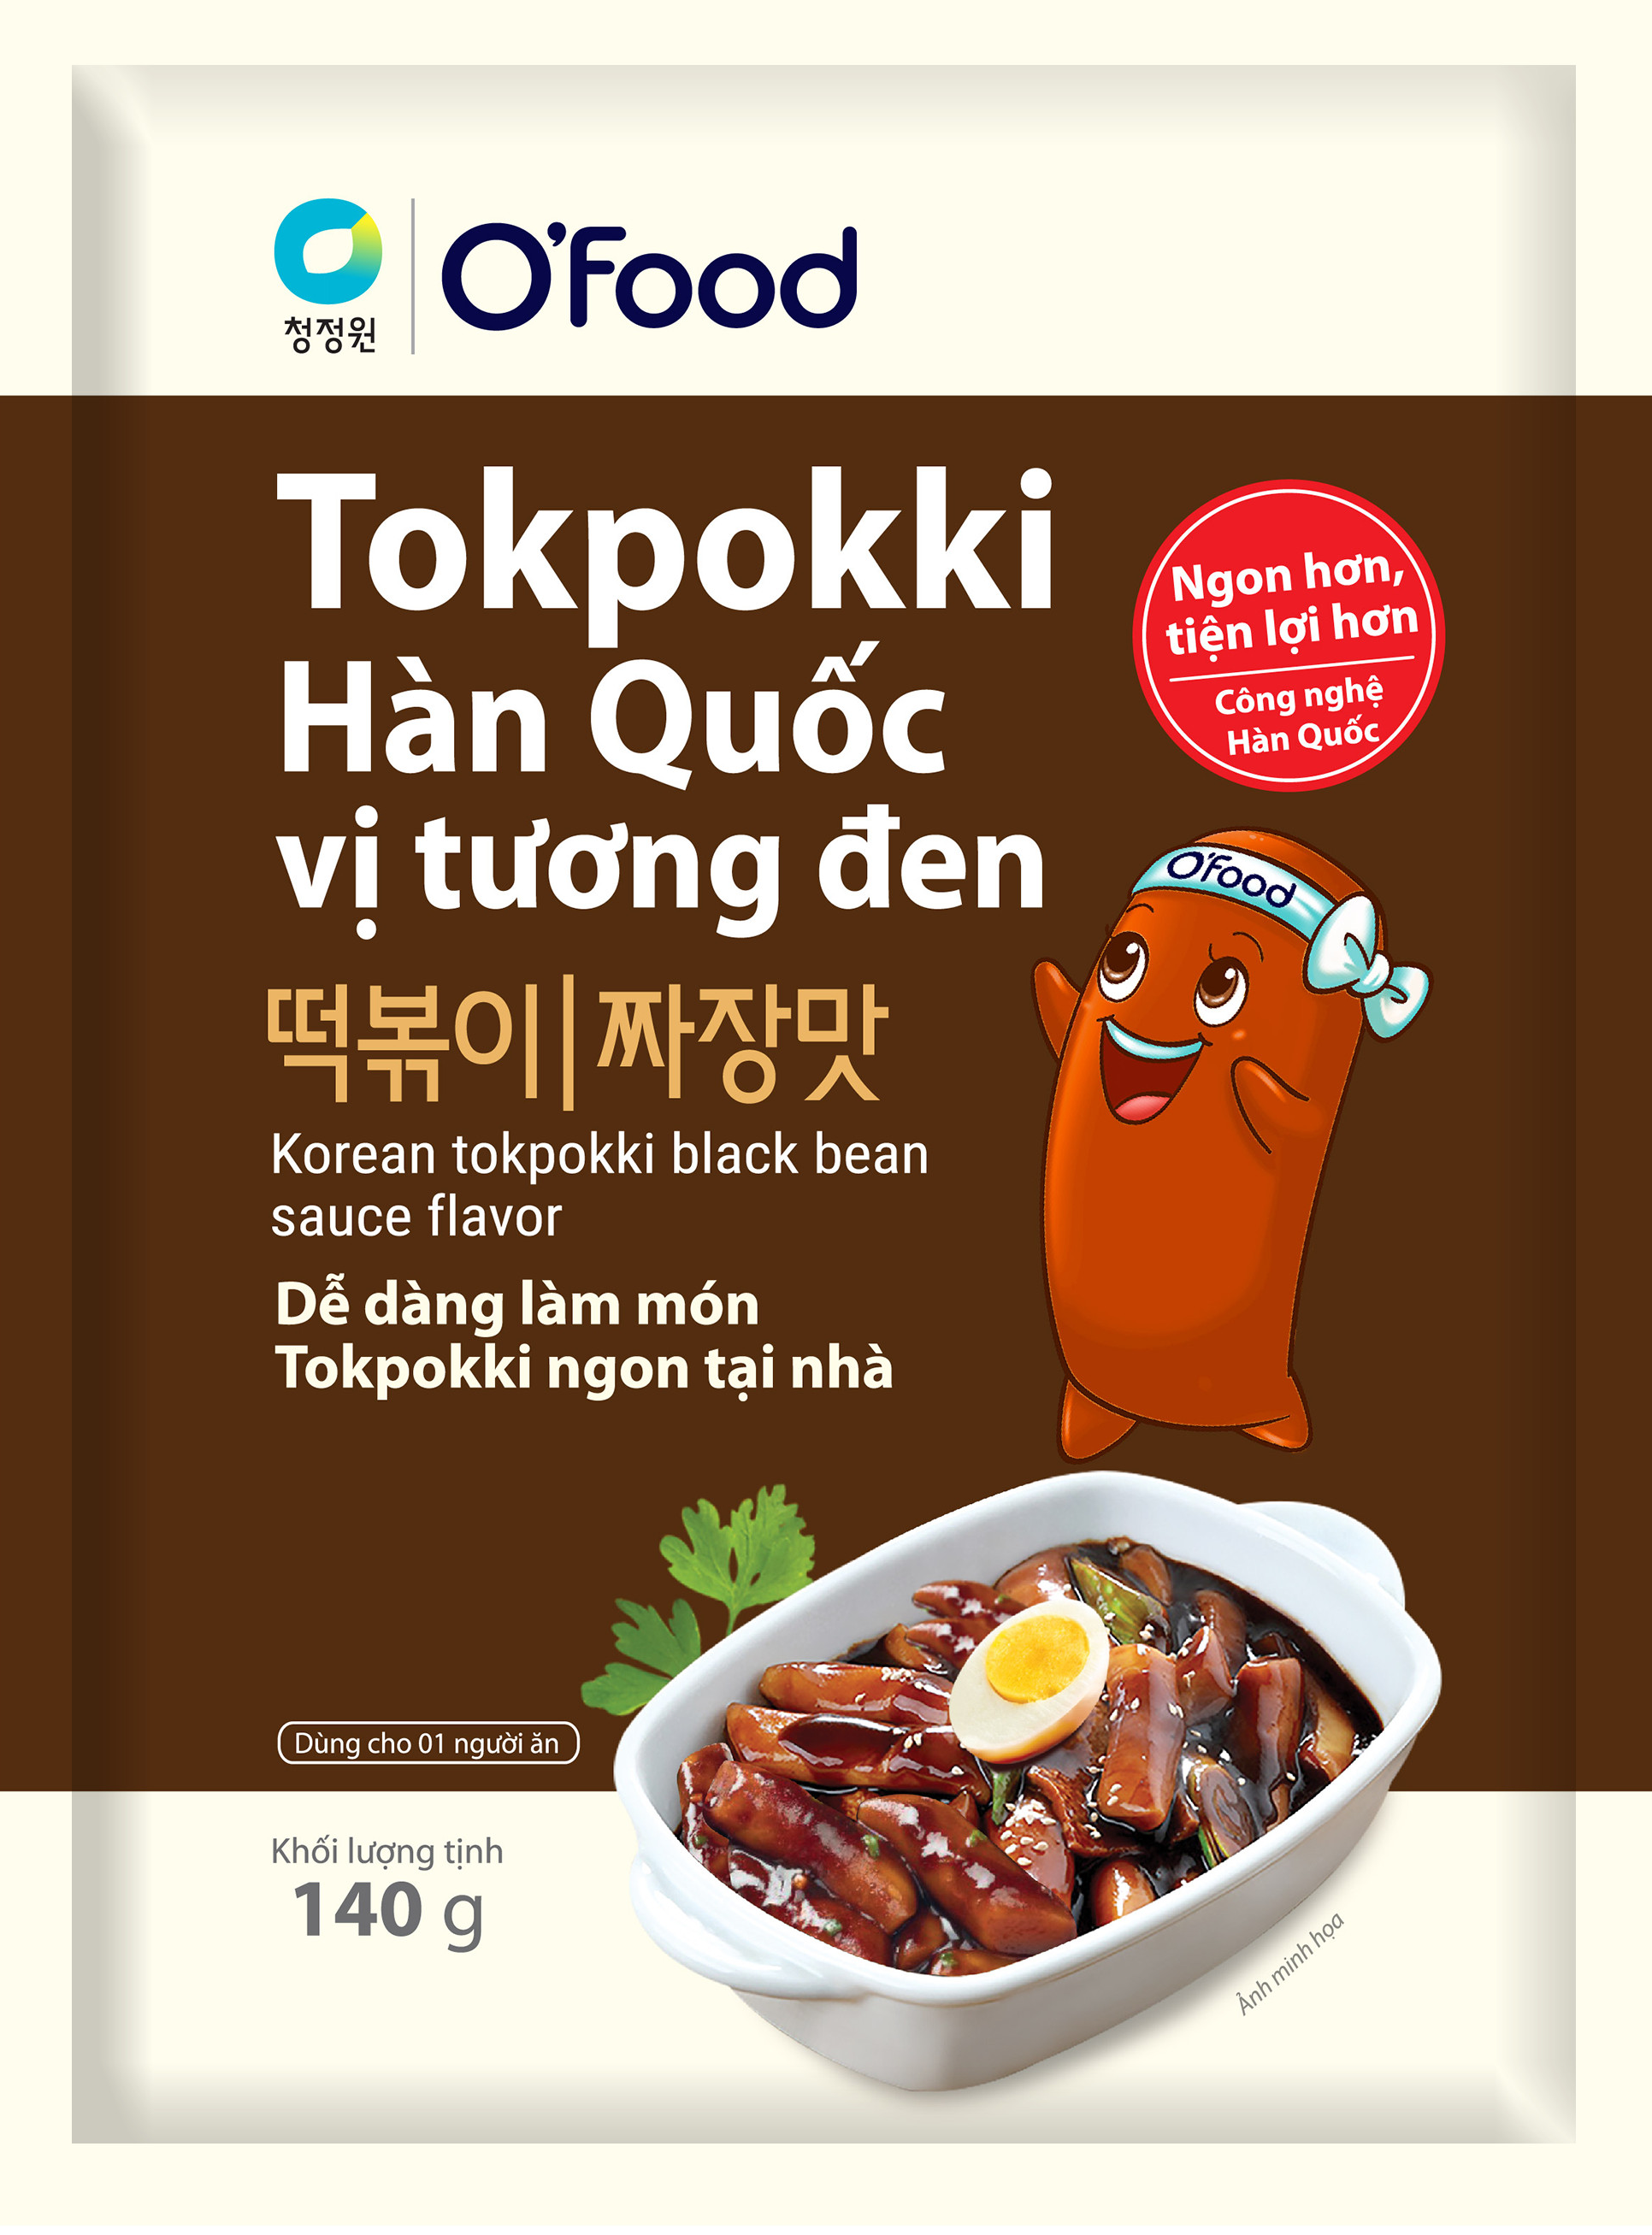 Tokpokki Chuẩn Vị Hàn Quốc | O'Food Việt Nam